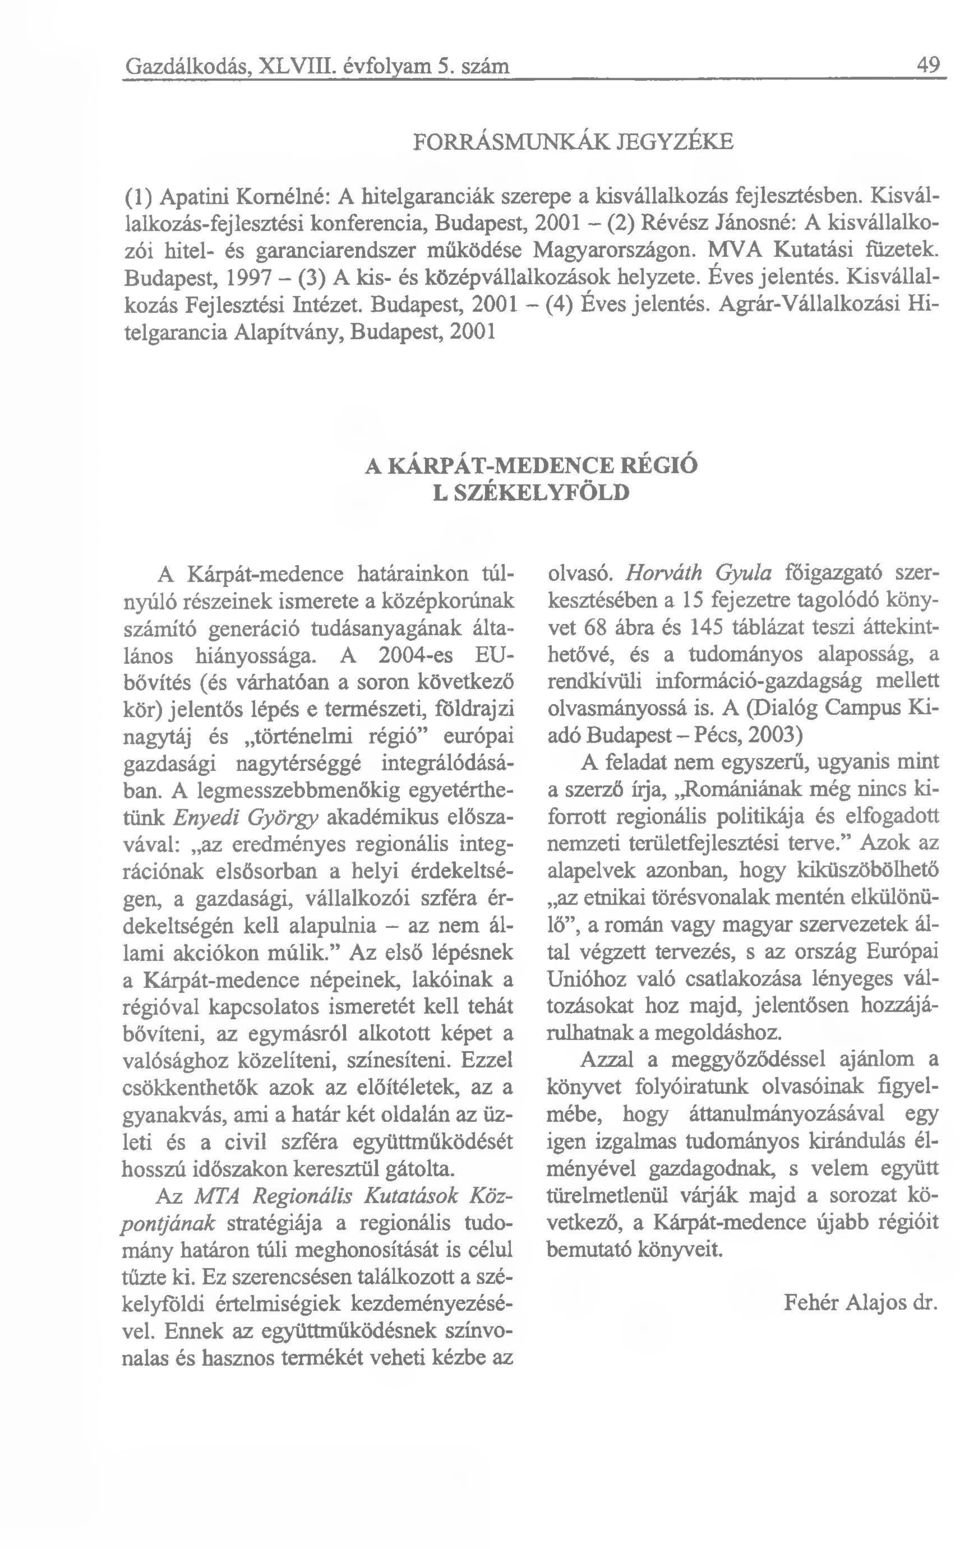 Budapest, 1997 - (3) A kis- és középvállalkozások helyzete. Éves jelentés. Kisvállalkozás Fejlesztési Intézet. Budapest, 2001 - (4) Éves jelentés.